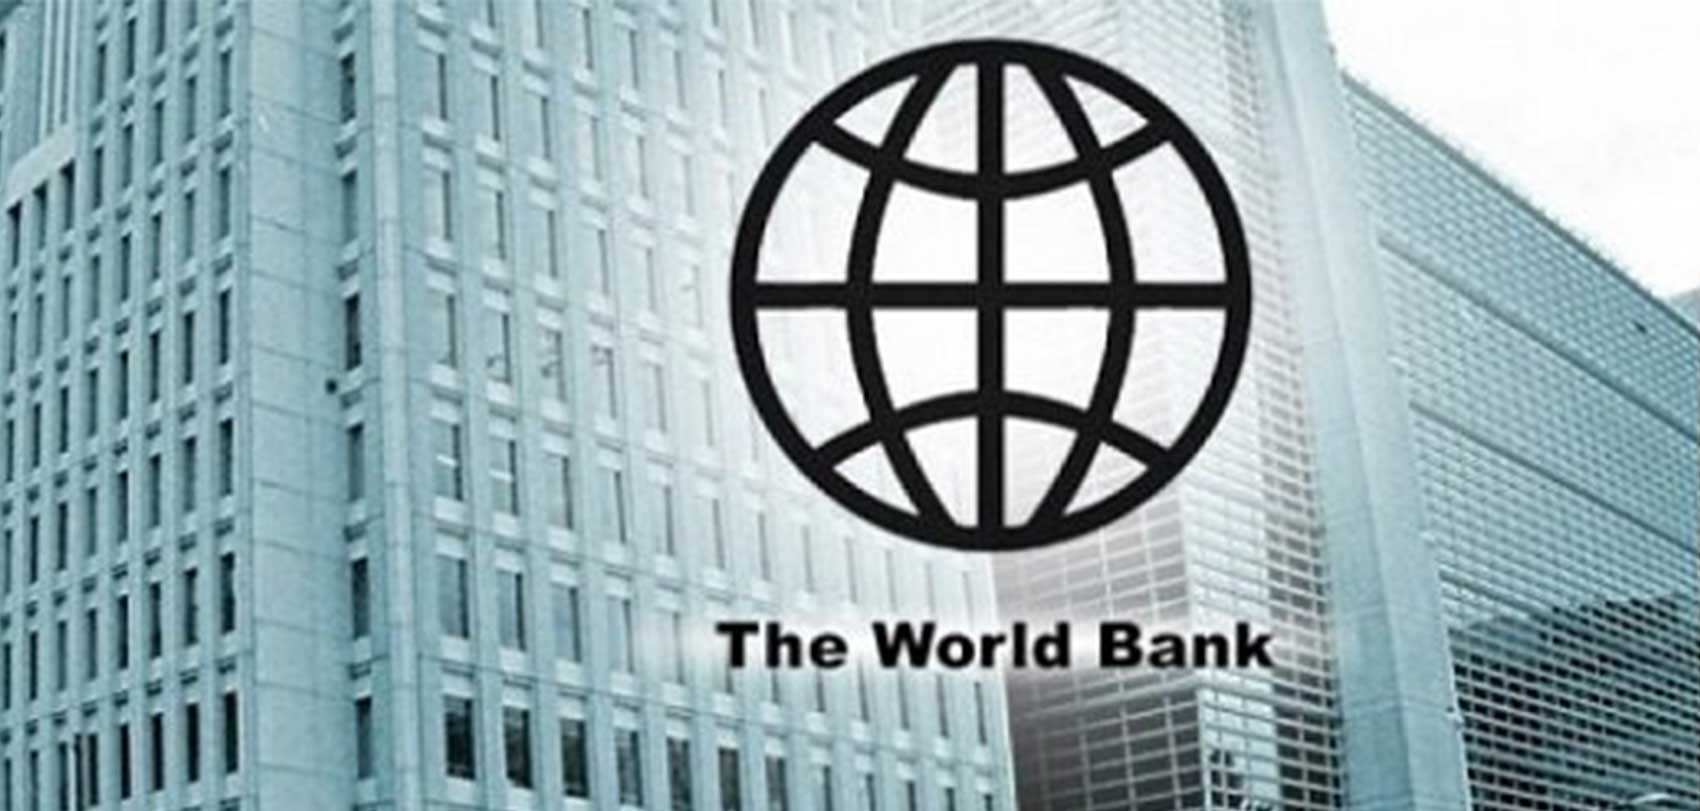 विश्व बैंकले नेपालमा स्वास्थ्य सुधारका लागि गरेको सहयोगलाई निरन्तरता दिने